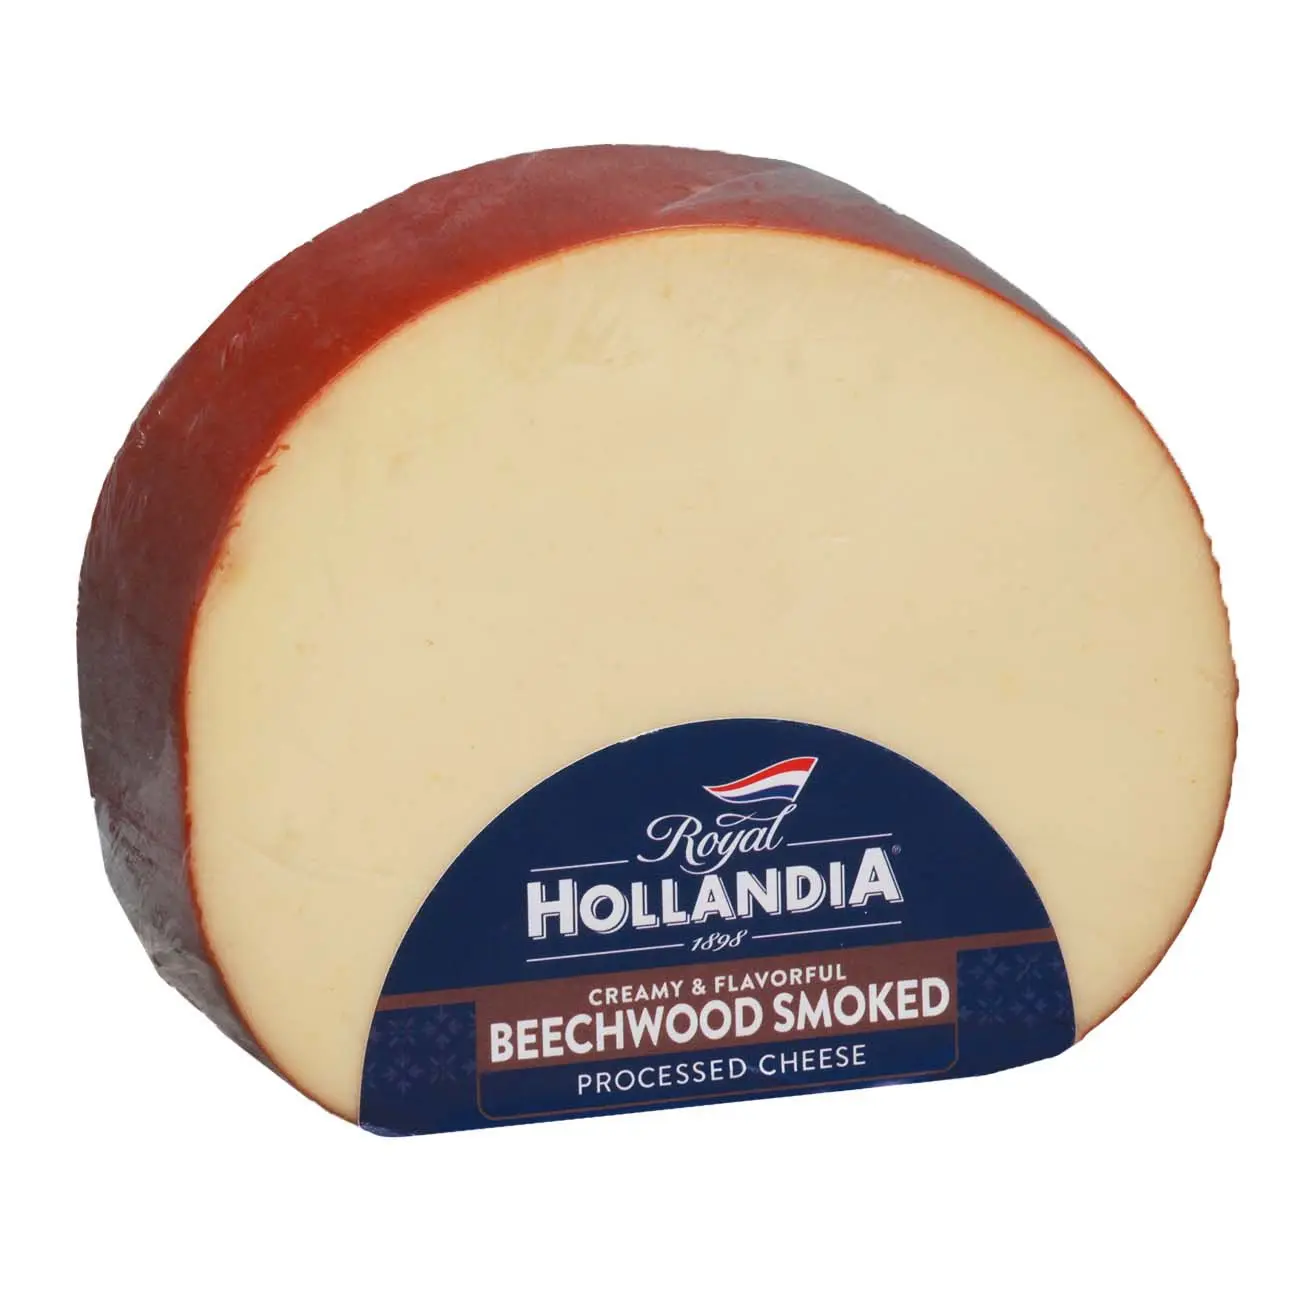 beechwood smoked cheese - What is beechwood smoked cheese